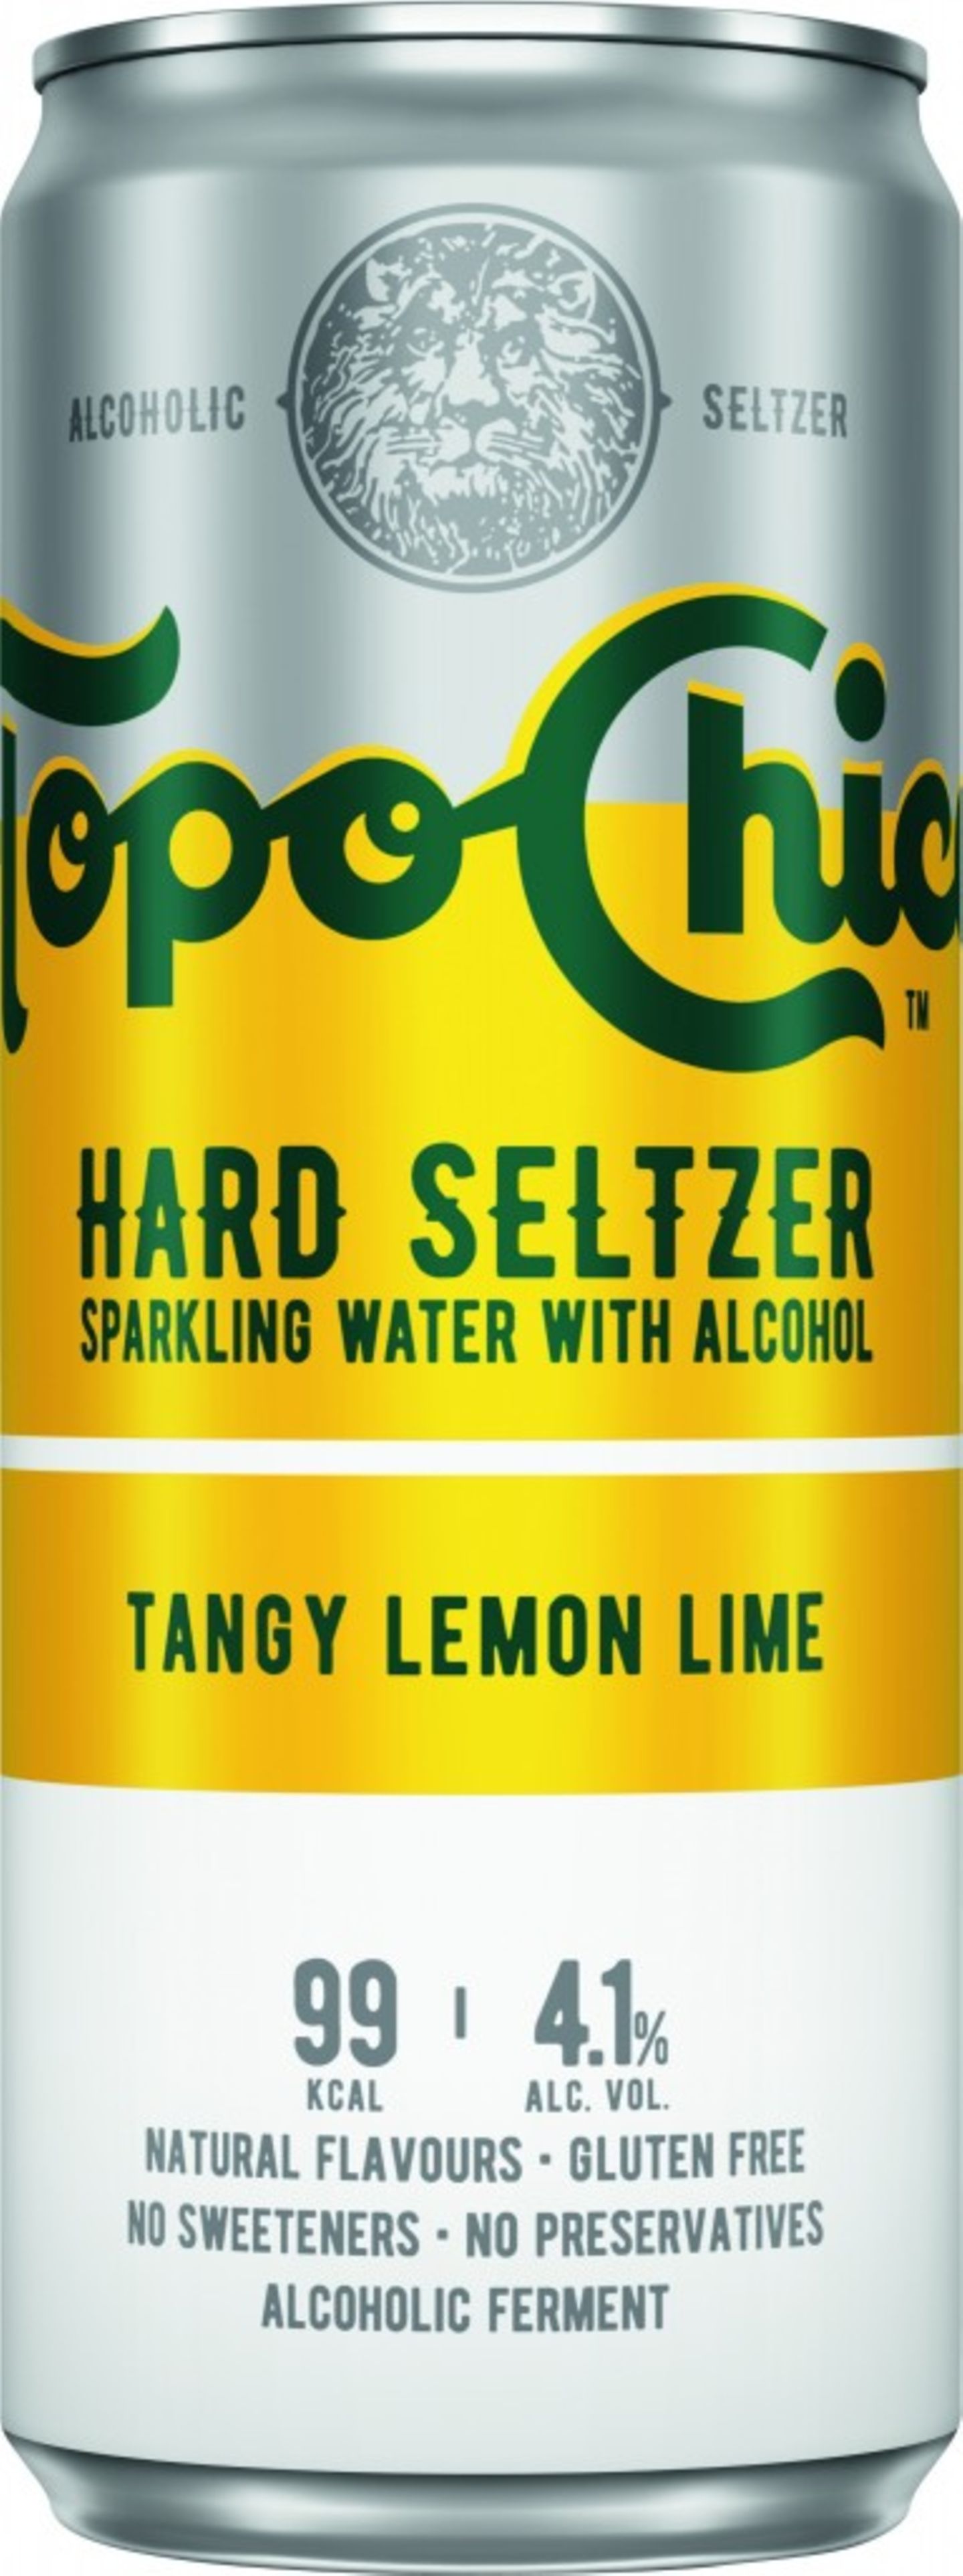 Sobald es um Mixgetränke geht, bin ich in der Regel skeptisch. Doch dieses hier hat mich wirklich überzeugt: Topo Chico. Das Hard Seltzer ist ein alkoholhaltiges Mischgetränk mit Fruchtdessertwein und natürlichen Aromen. Das beste daran: Es hat kaum Zucker und schmeckt trotzdem richtig gut. Meine Lieblingssorte ist "Tangy Lemon Lime", es gibt darüber hinaus noch die Sorten "Tropical Mango" und "Cherry Açai". Für rund 1,50 Euro erhältlich.  Friederike, Mode- und Beauty-Readkteurin